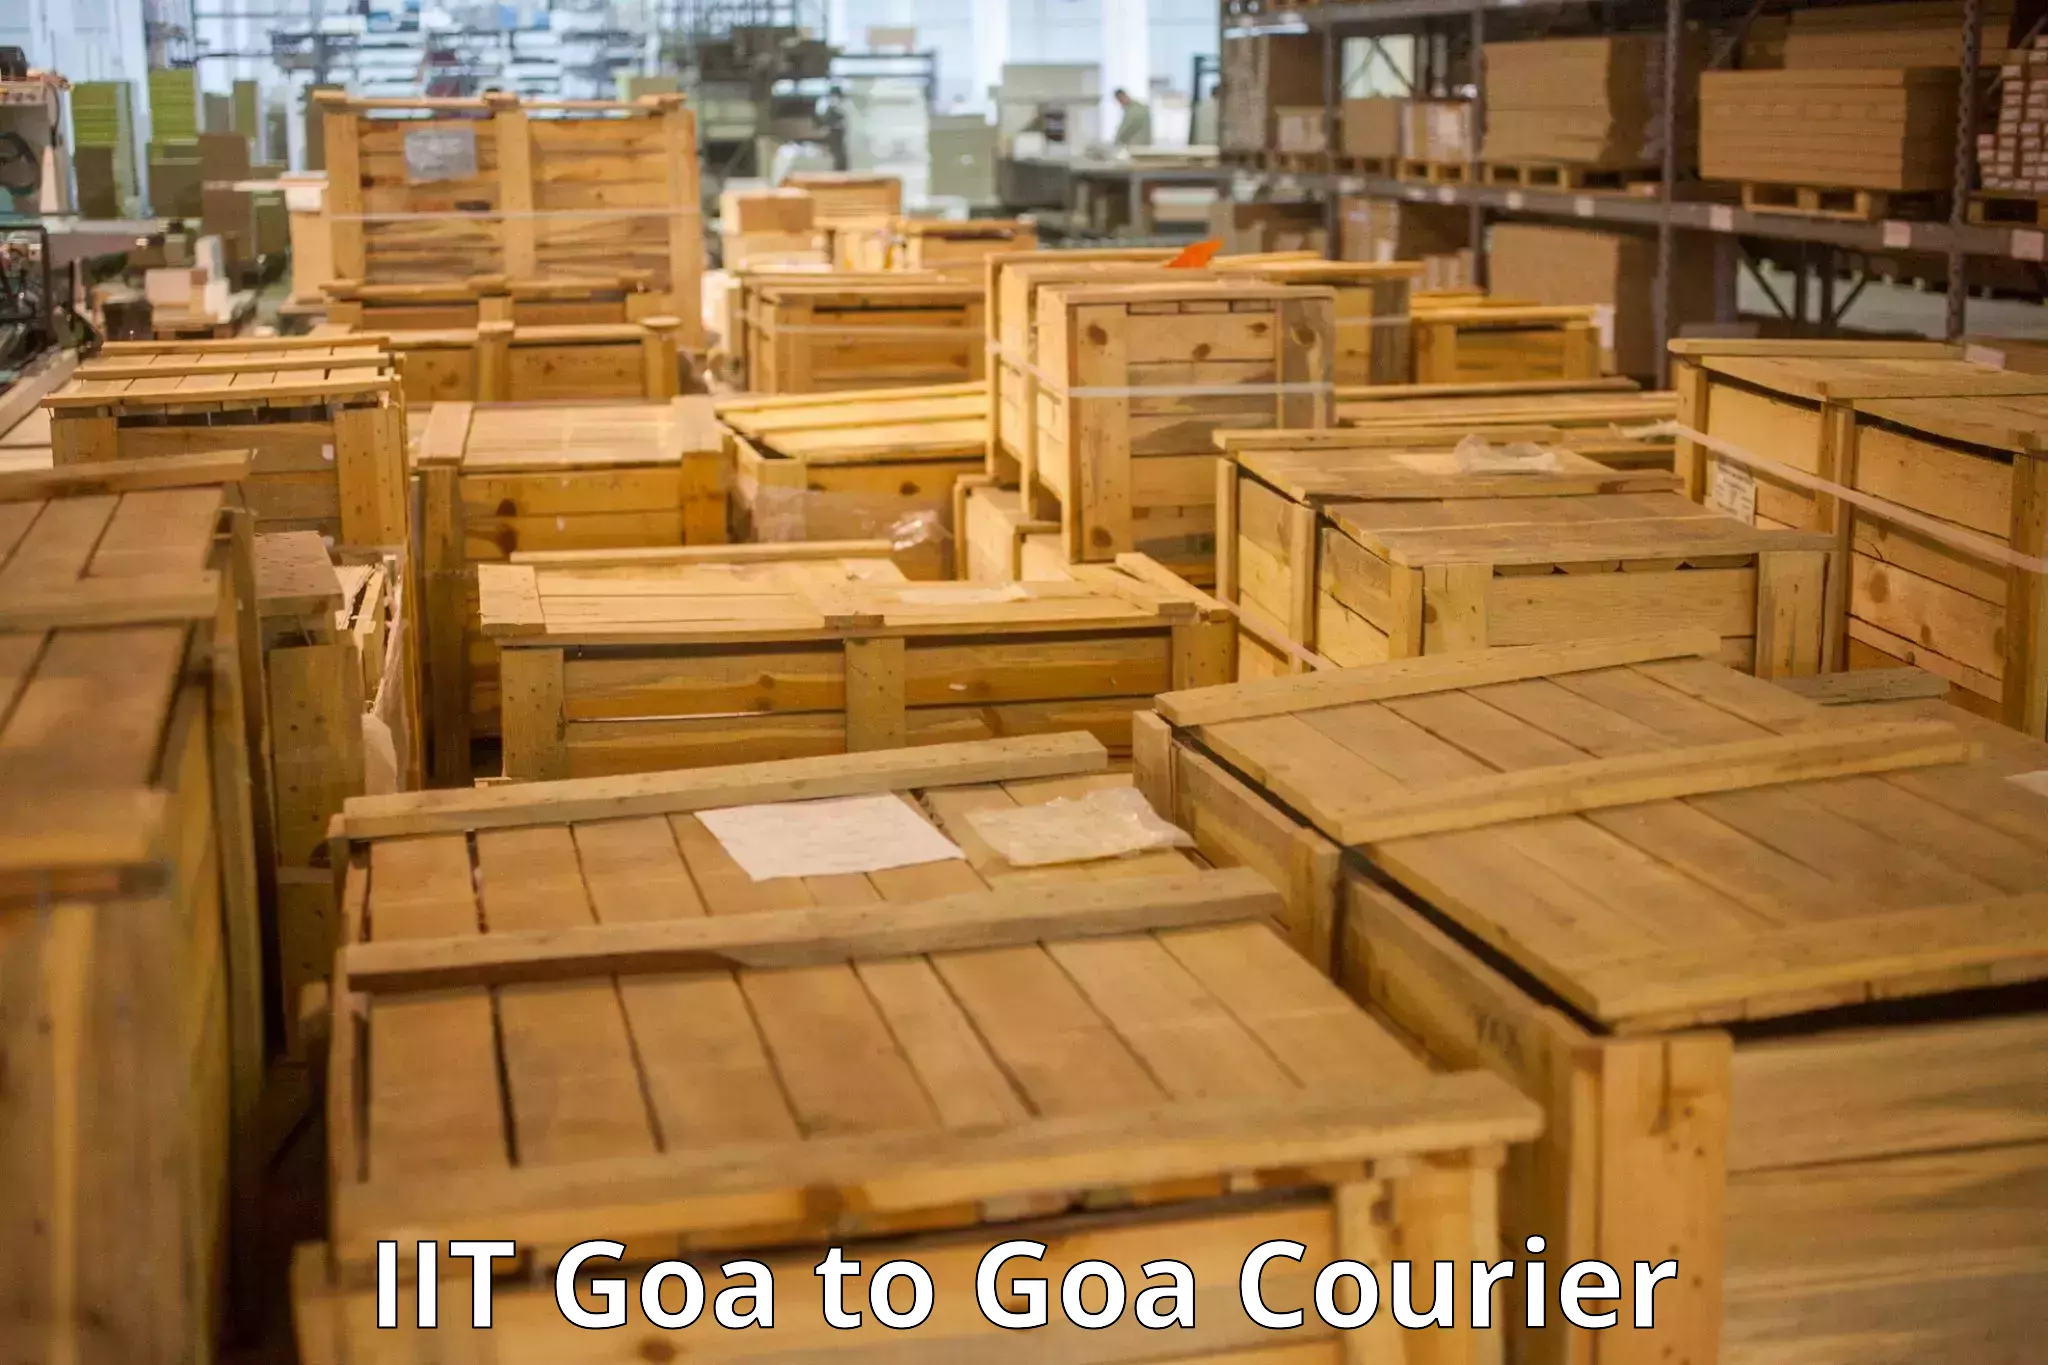 Same day luggage service IIT Goa to Goa